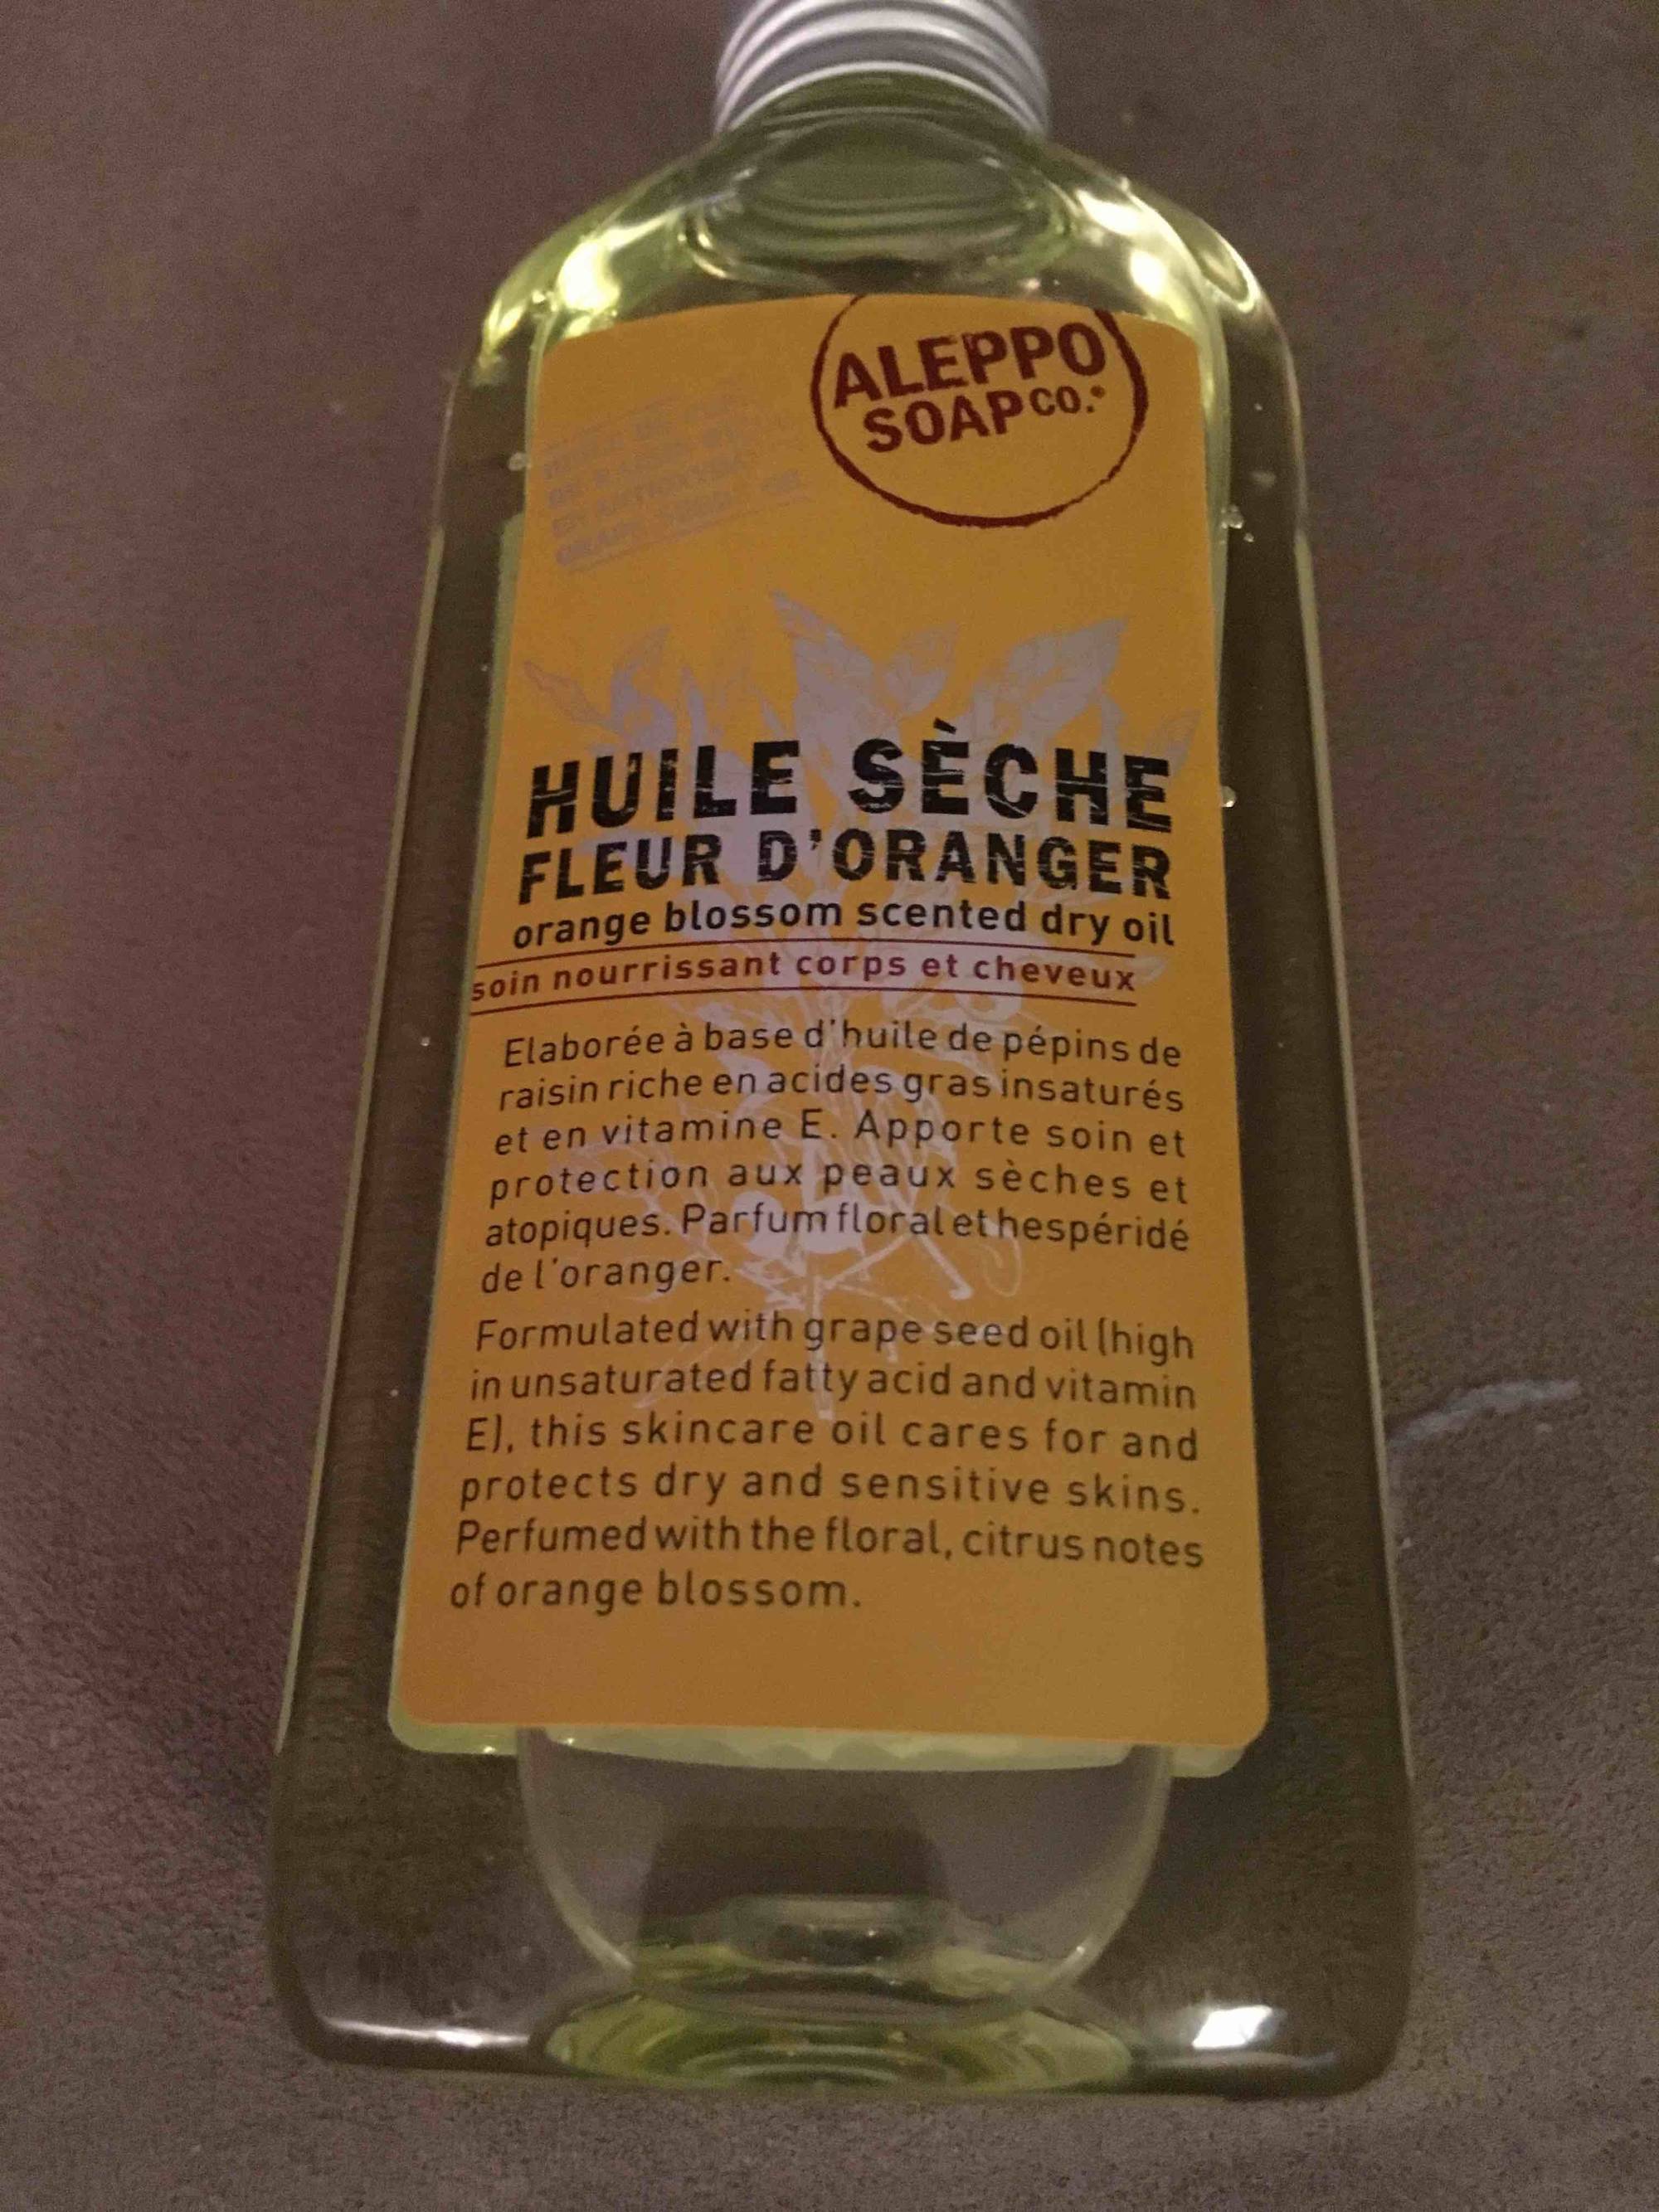 ALEPPO SOAP CO. - Huile sèche fleur d'oranger - Soin nourrissant corps et cheveux